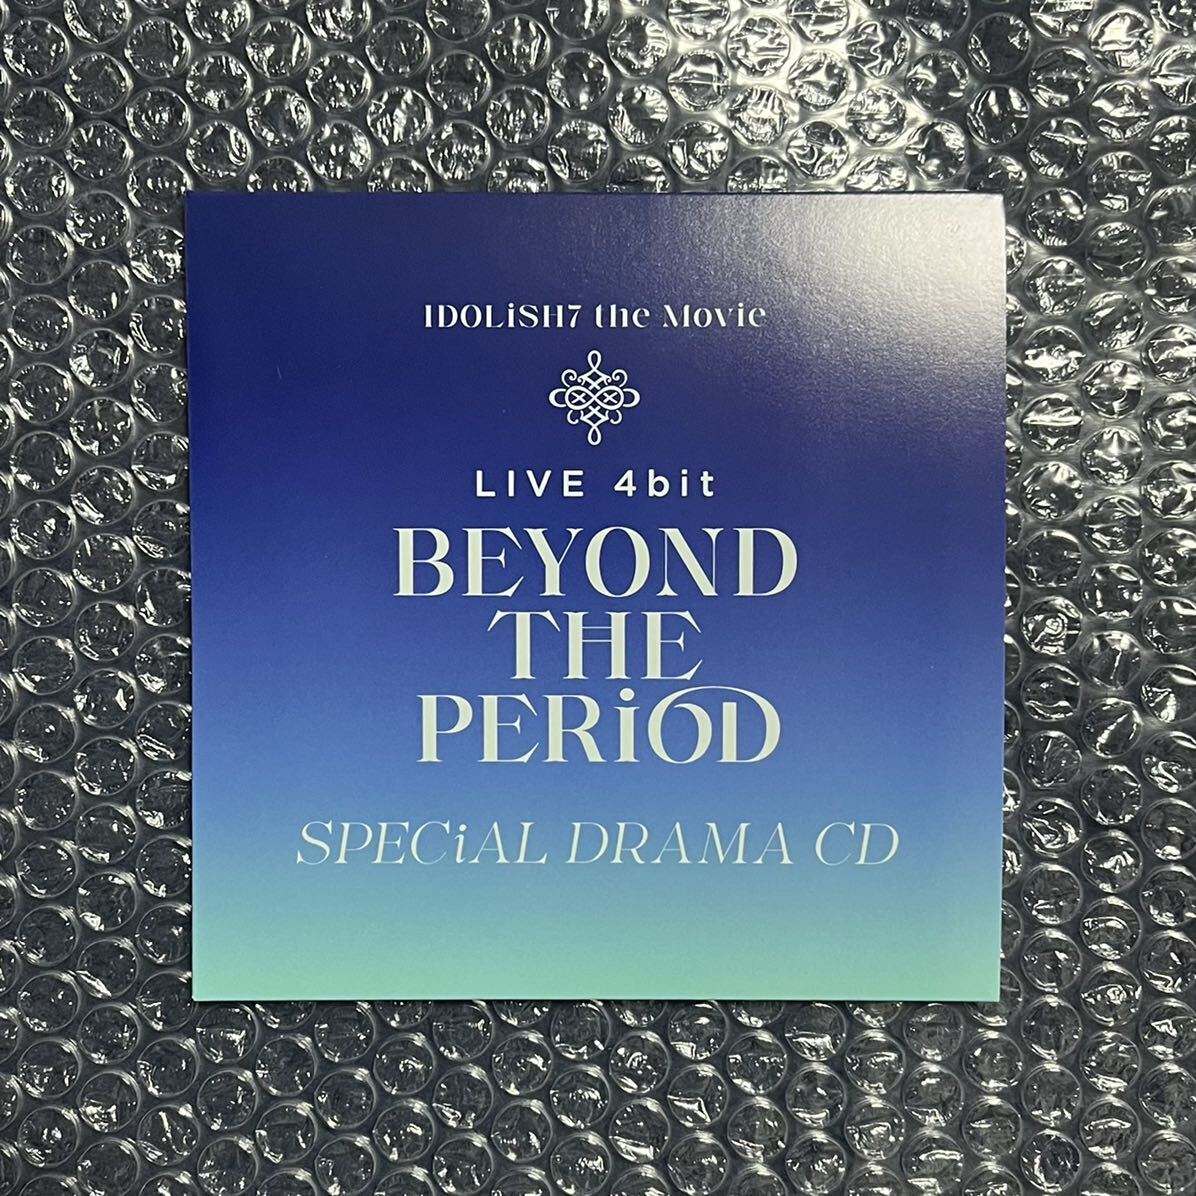 劇場版アイドリッシュセブン LIVE 4bit BEYOND THE PERiOD』 ナナイロストア限定Blu-ray BOX 特典 新規エピソード録り下ろしドラマCDの画像1